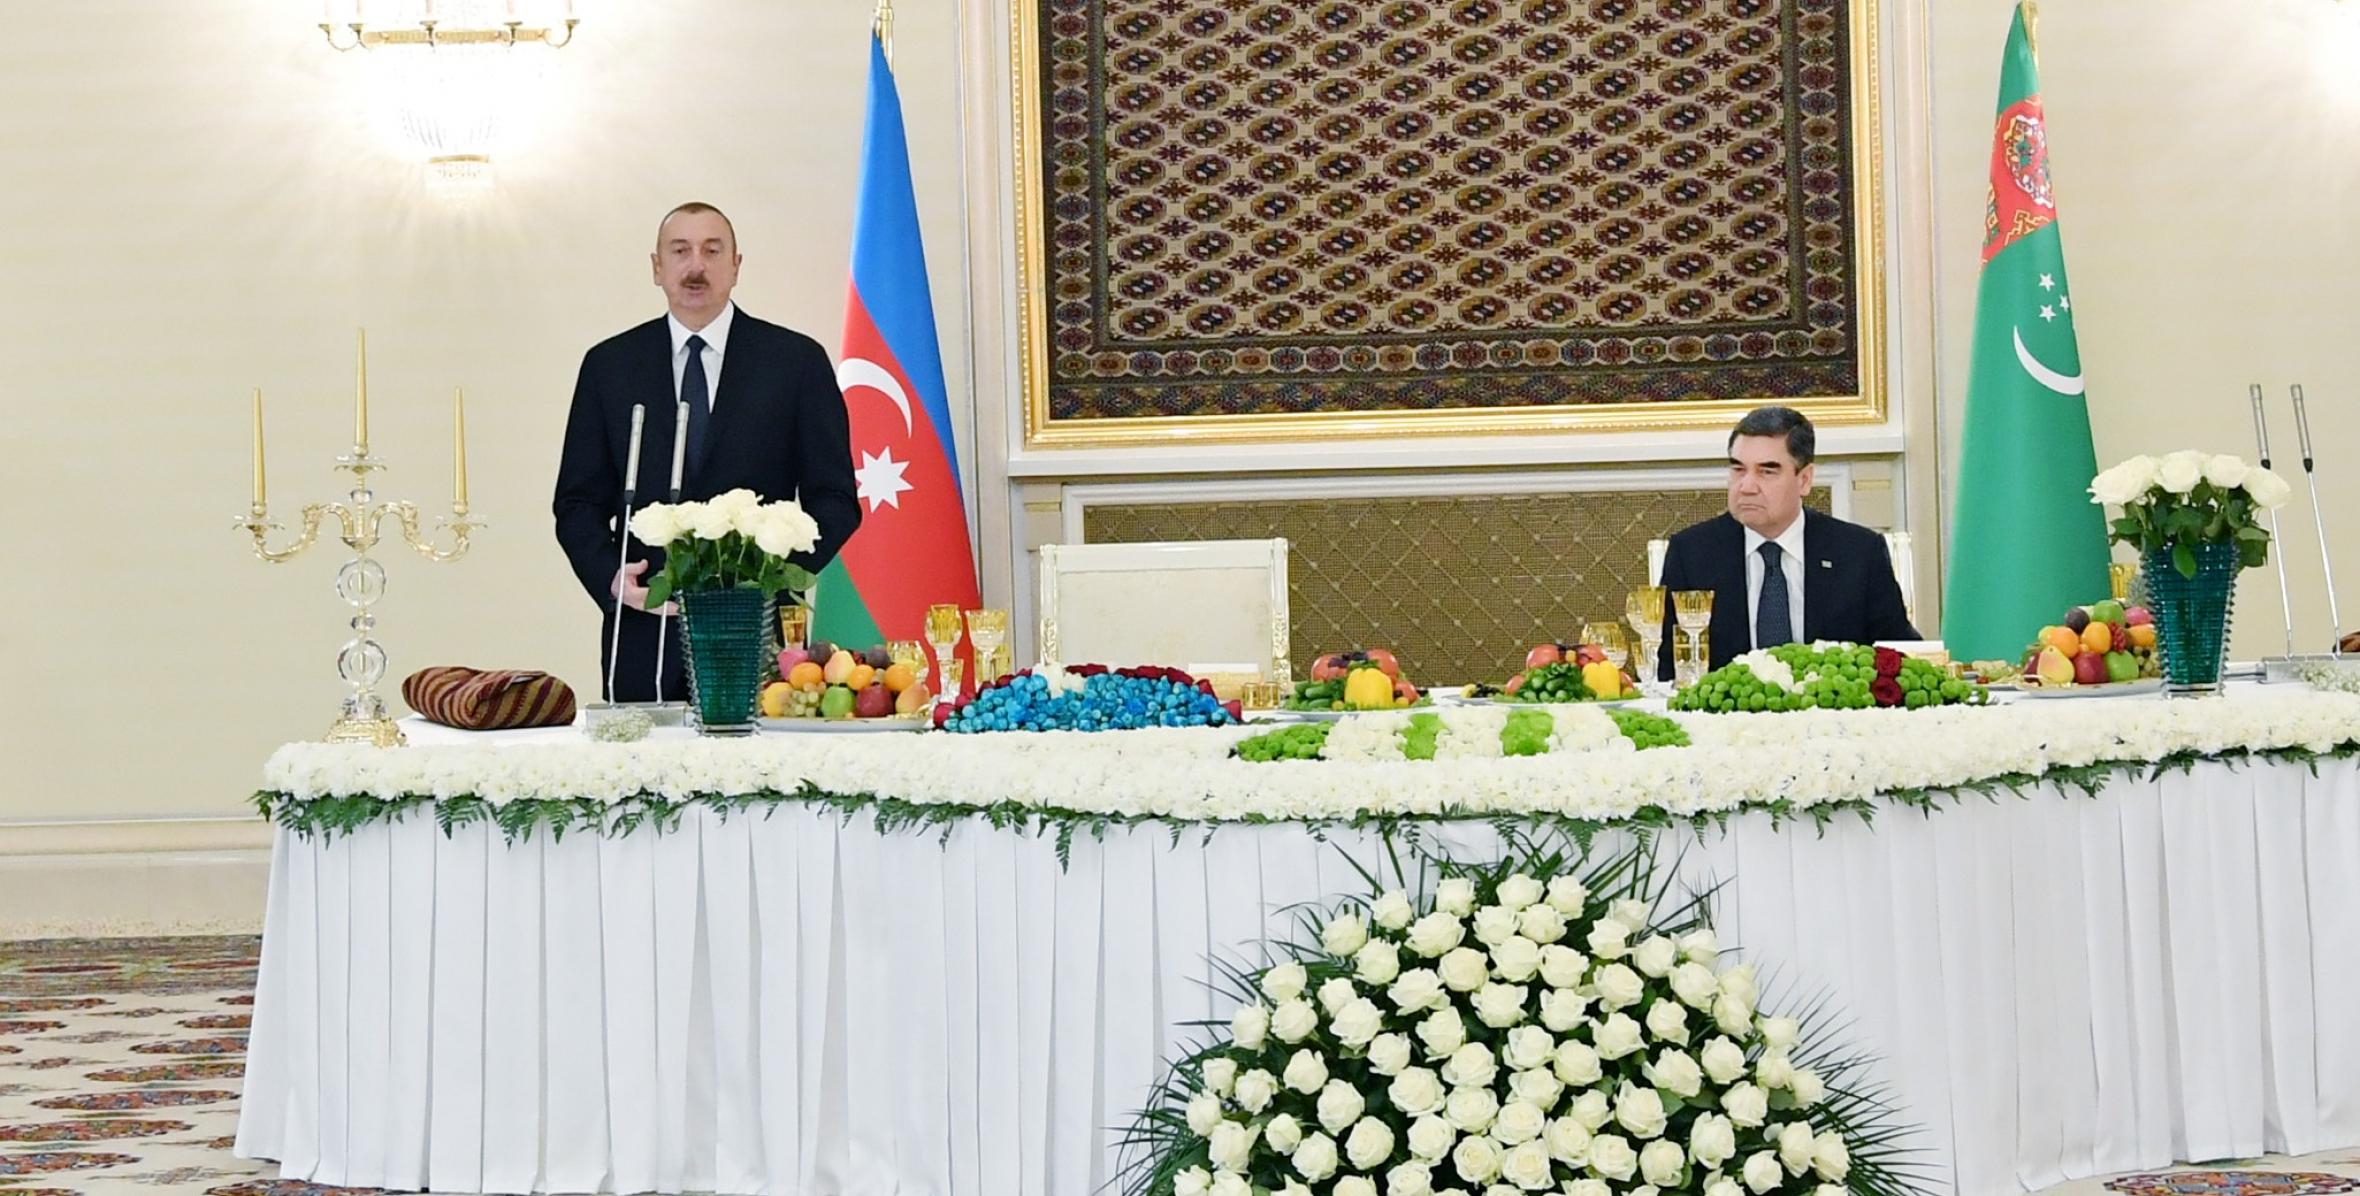 Turkmen President Gurbanguly Berdimuhamedov hosted official dinner in honor of Azerbaijani President Ilham Aliyev